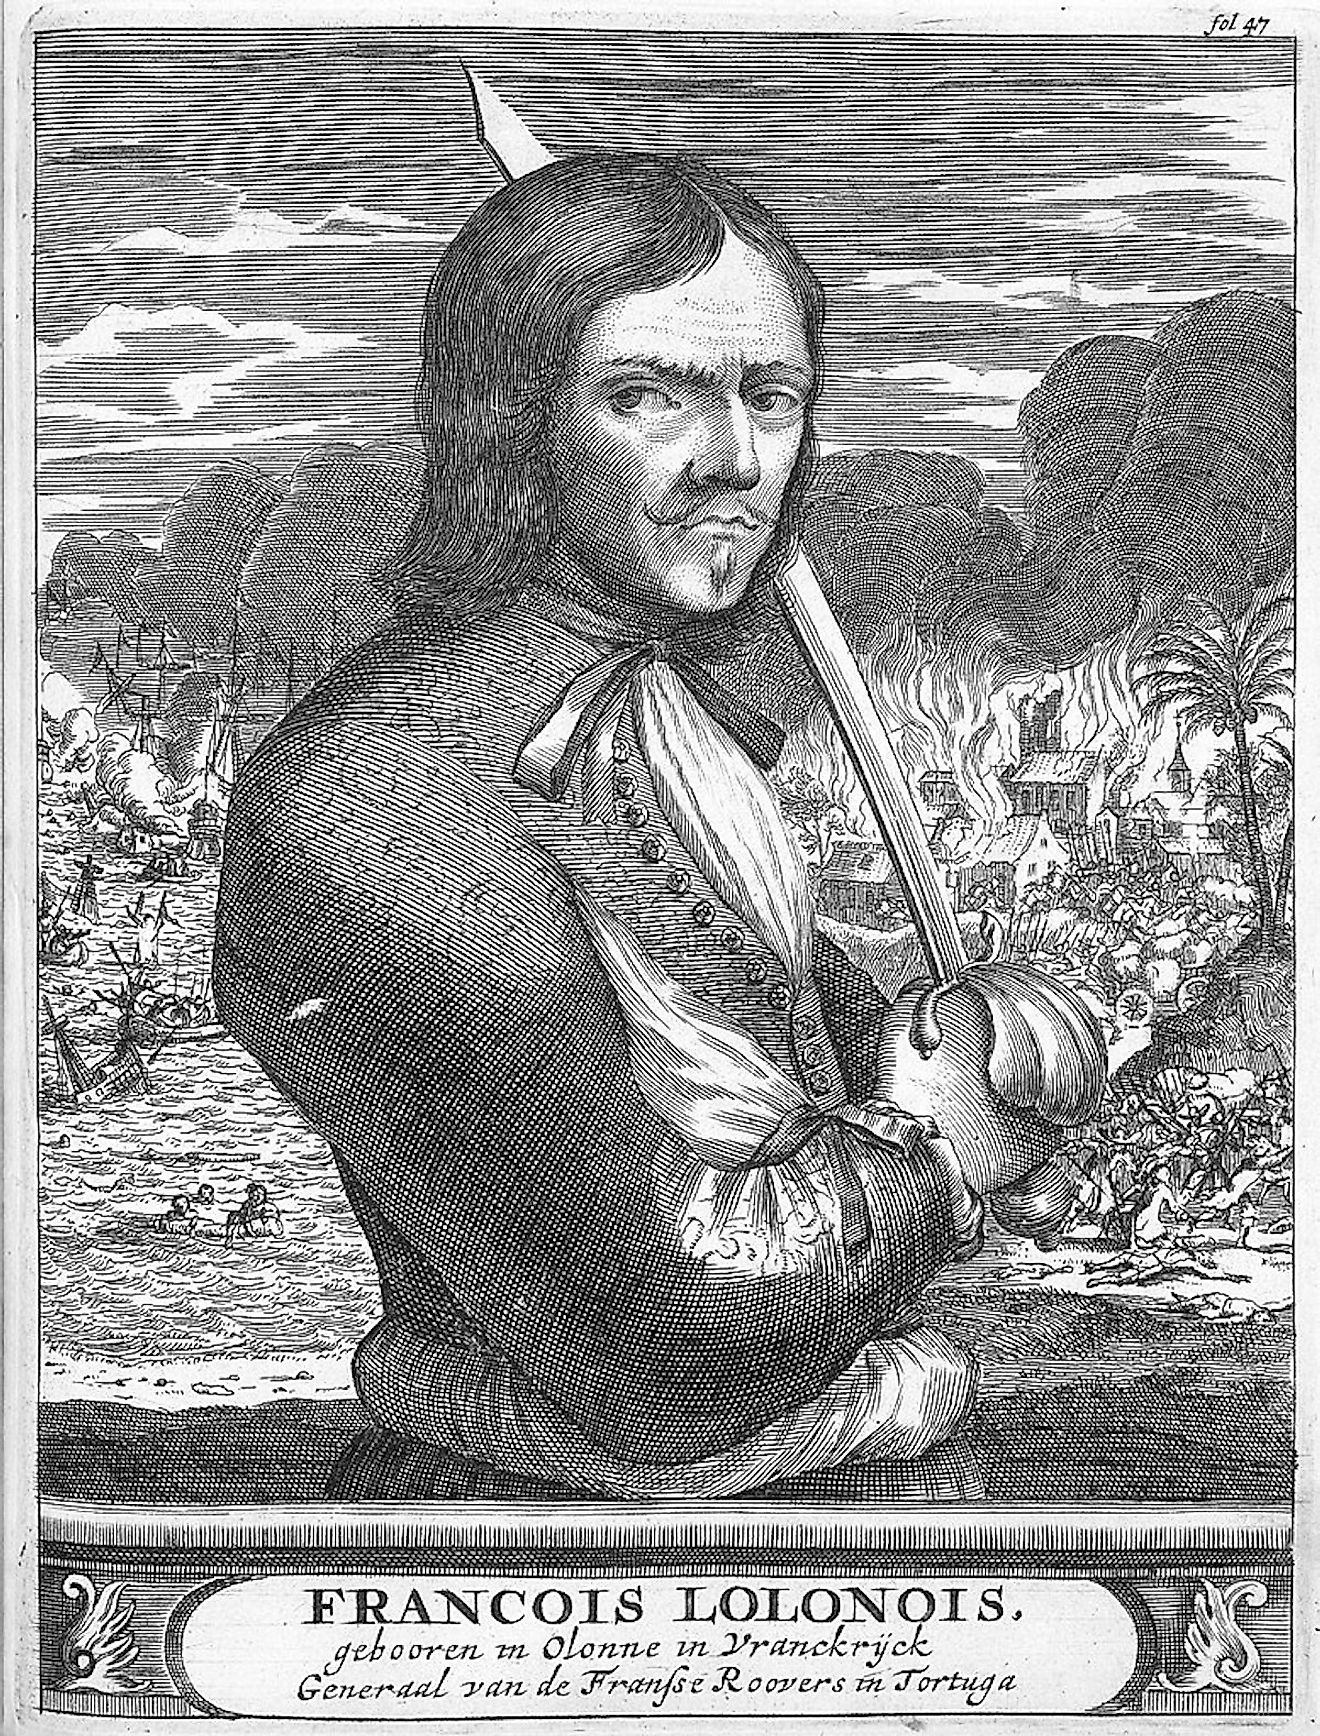 François l'Olonnais from "De Americaensche Zeerovers". 